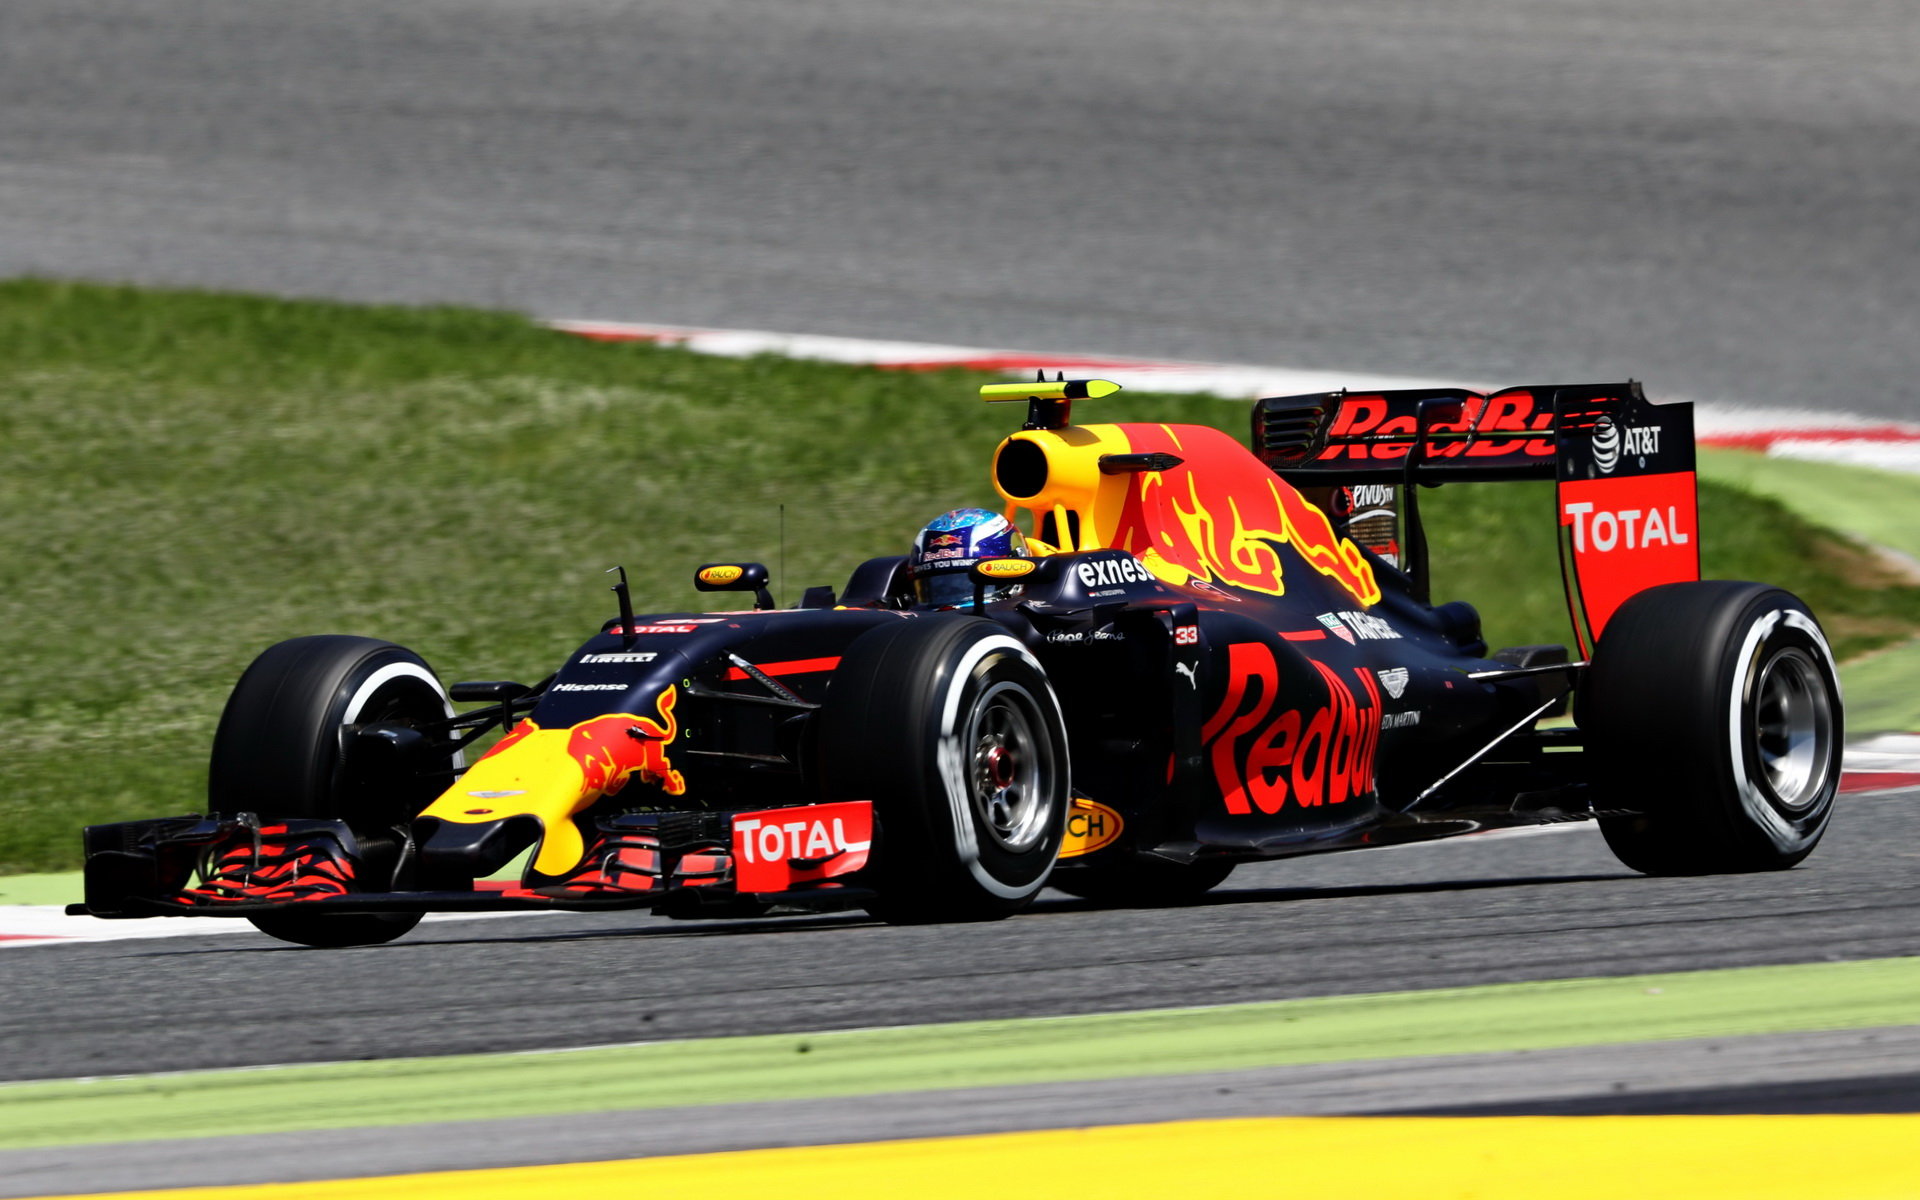 Půjde Max Verstappen cestou Sebastiana Vettela? Svého otce už výsledkově zdolal